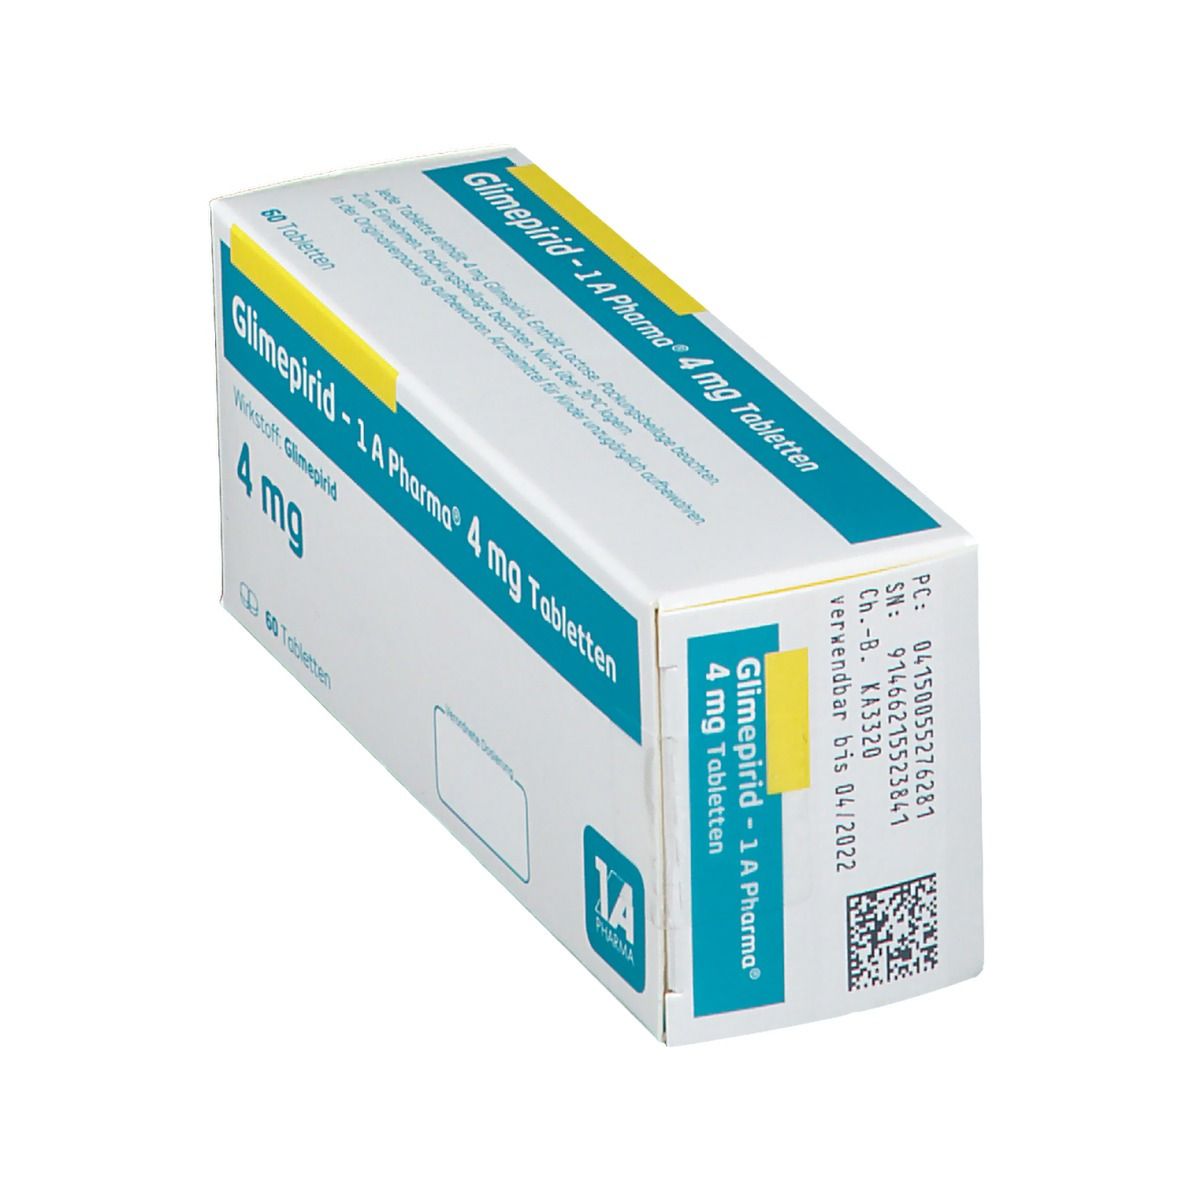 Glimepirid - 1 A Pharma® 4 mg